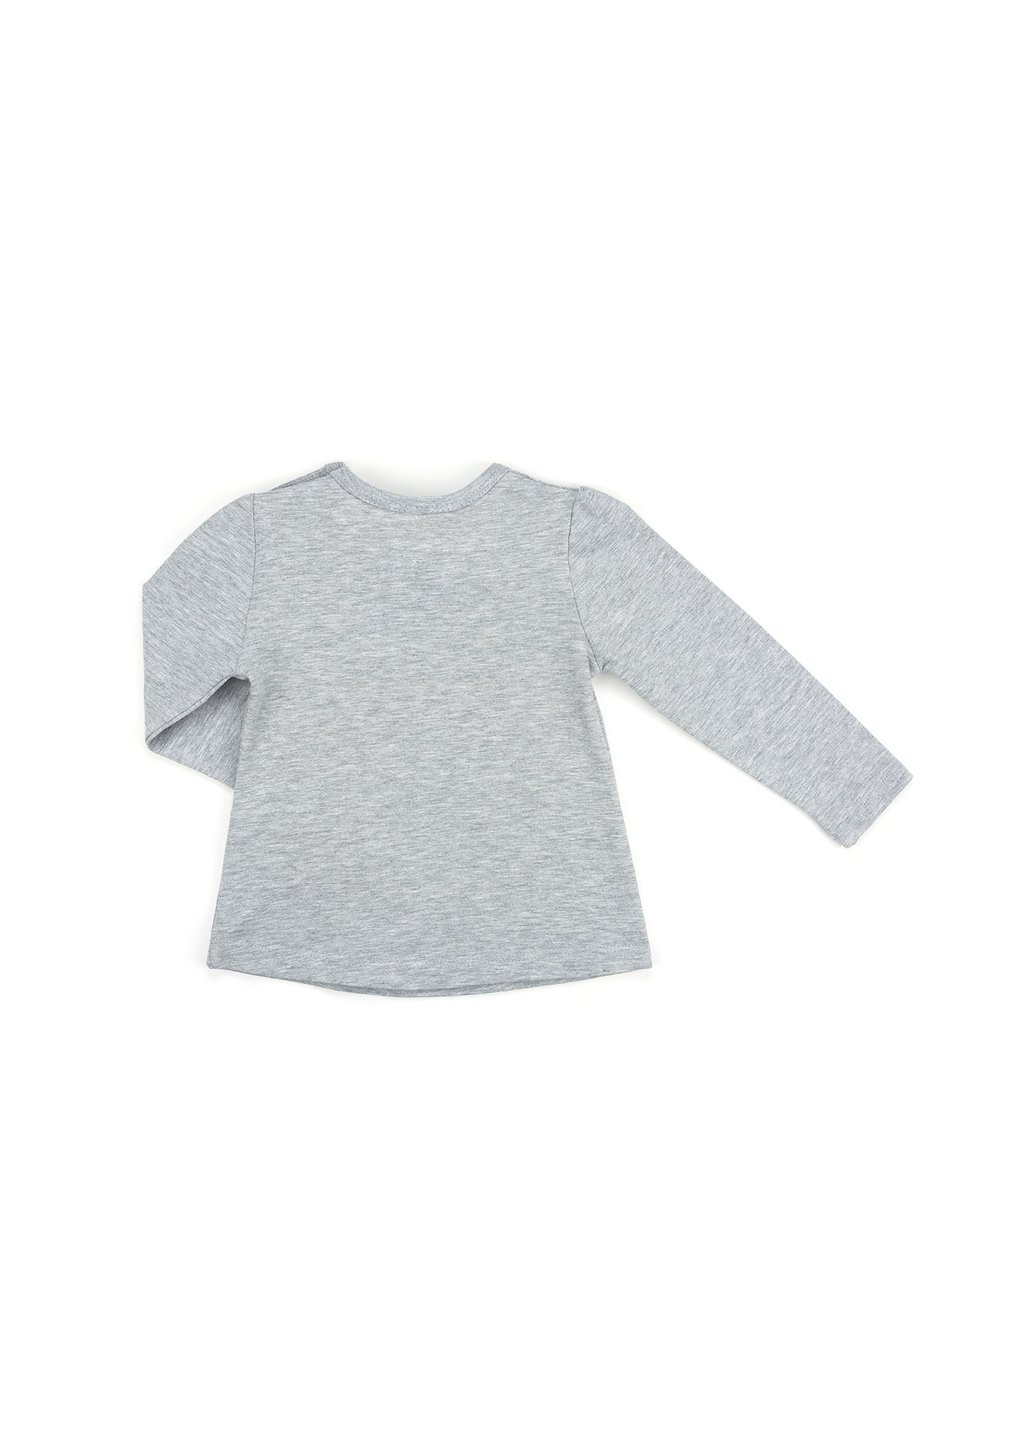 Сірий демісезонний набір дитячого одягу з бантиками (10527-74g-gray) Breeze